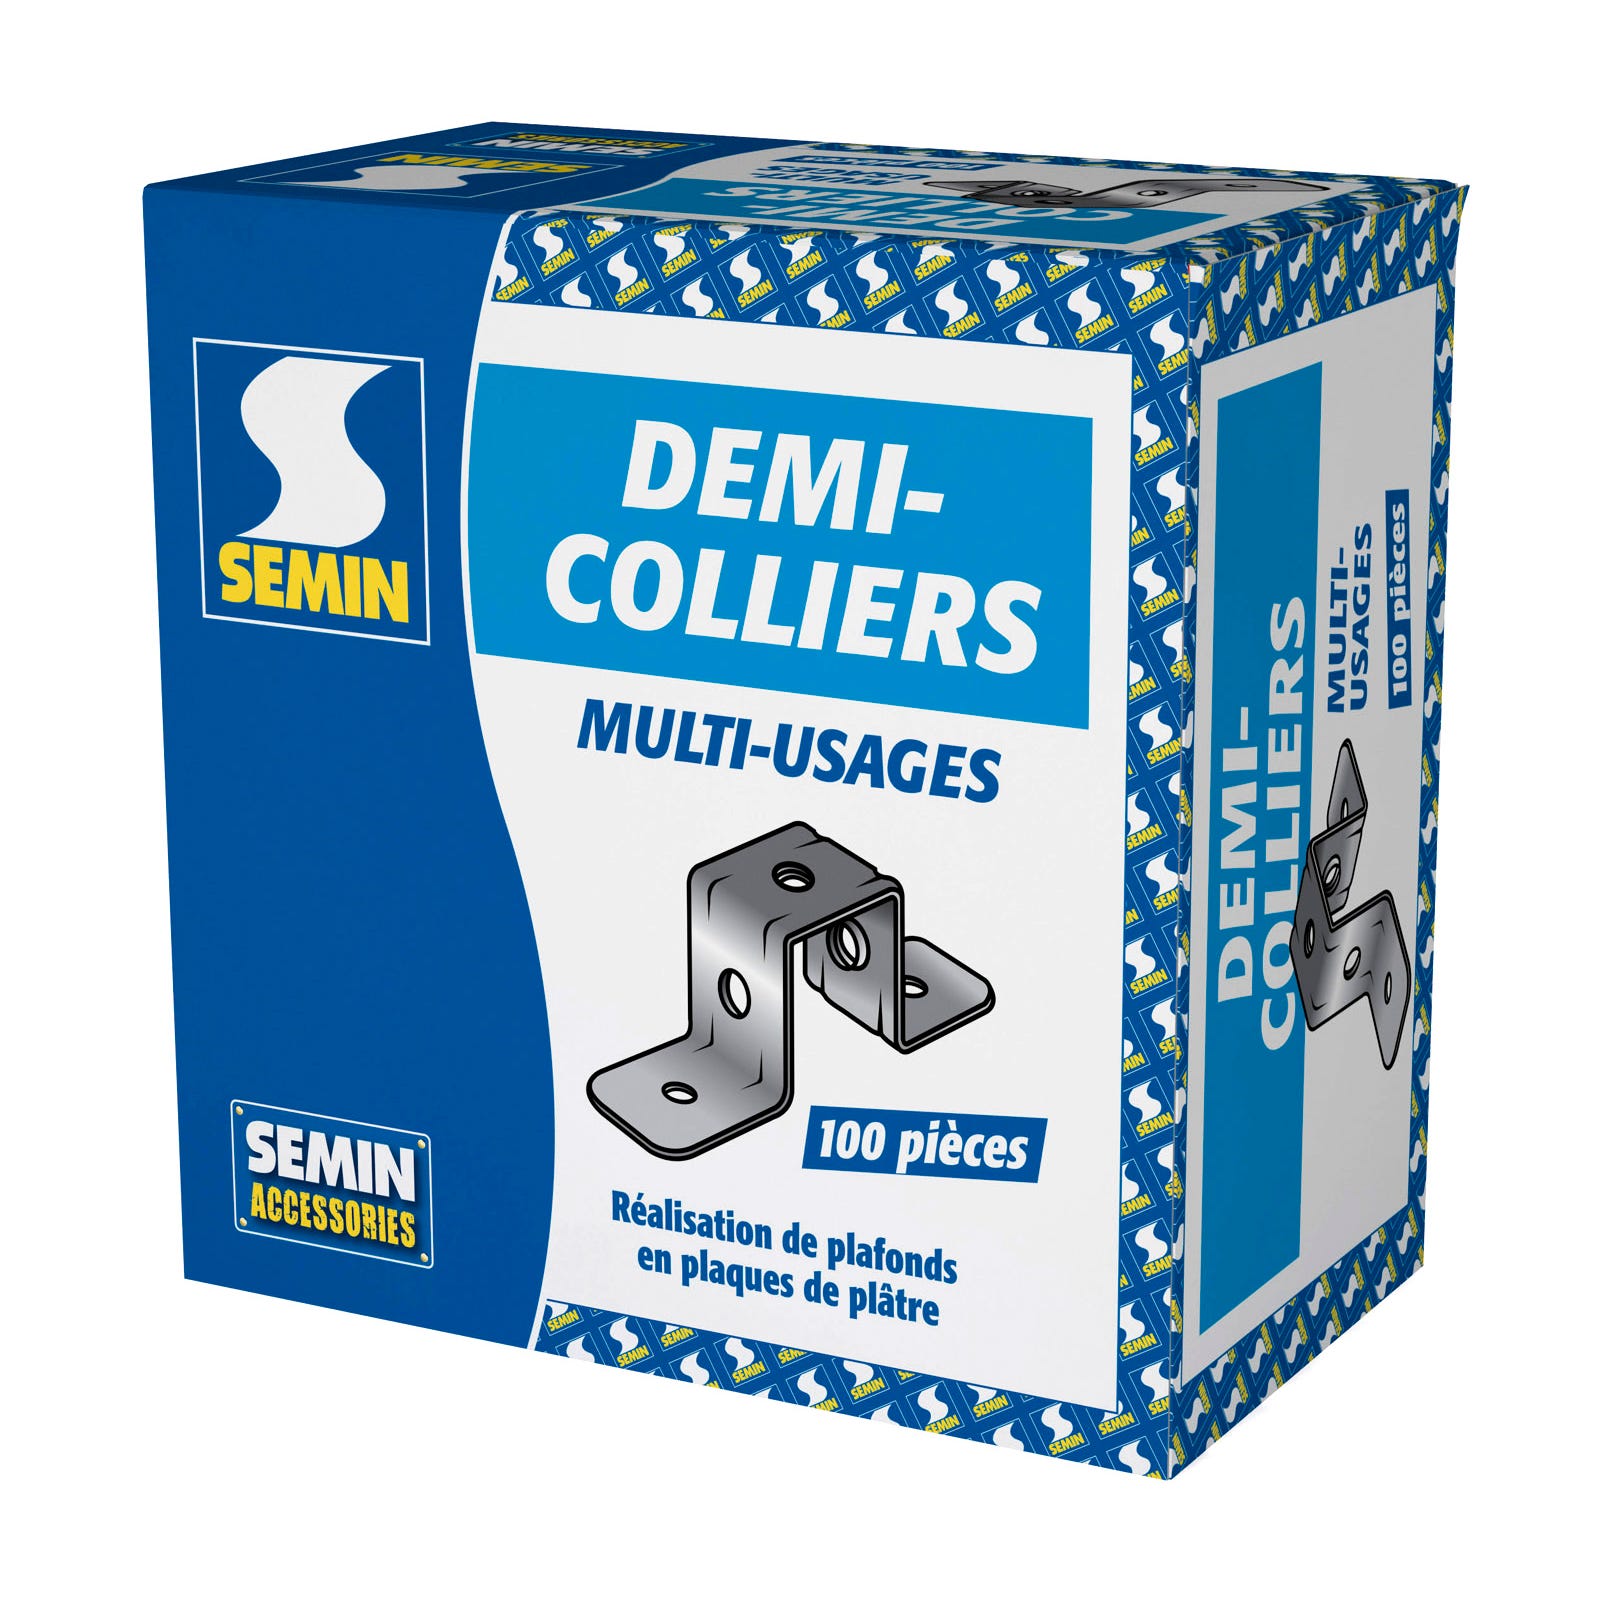 Demi Collier Multi-usages Semin, boite de 100 0